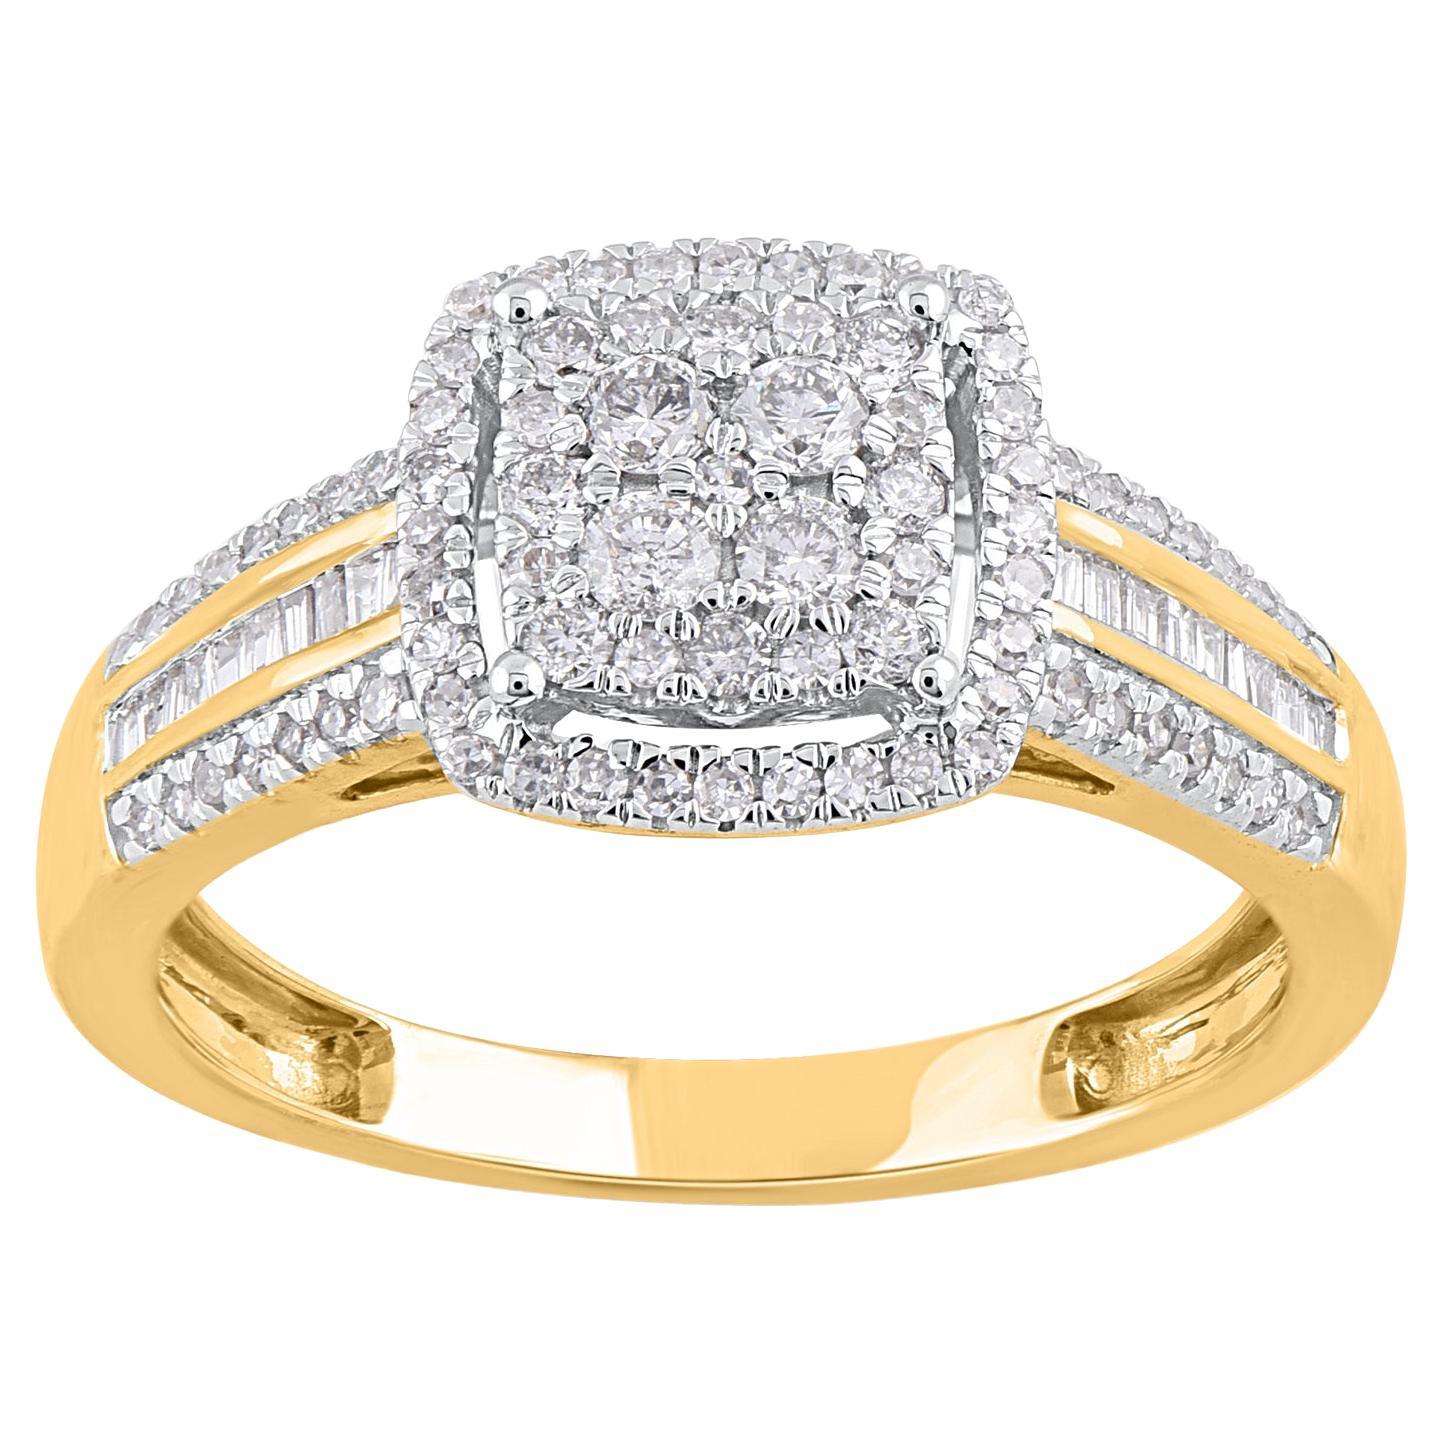 TJD 0.50 Carat Round and Baguette Diamond 14 Karat Yellow Gold Wedding Ring